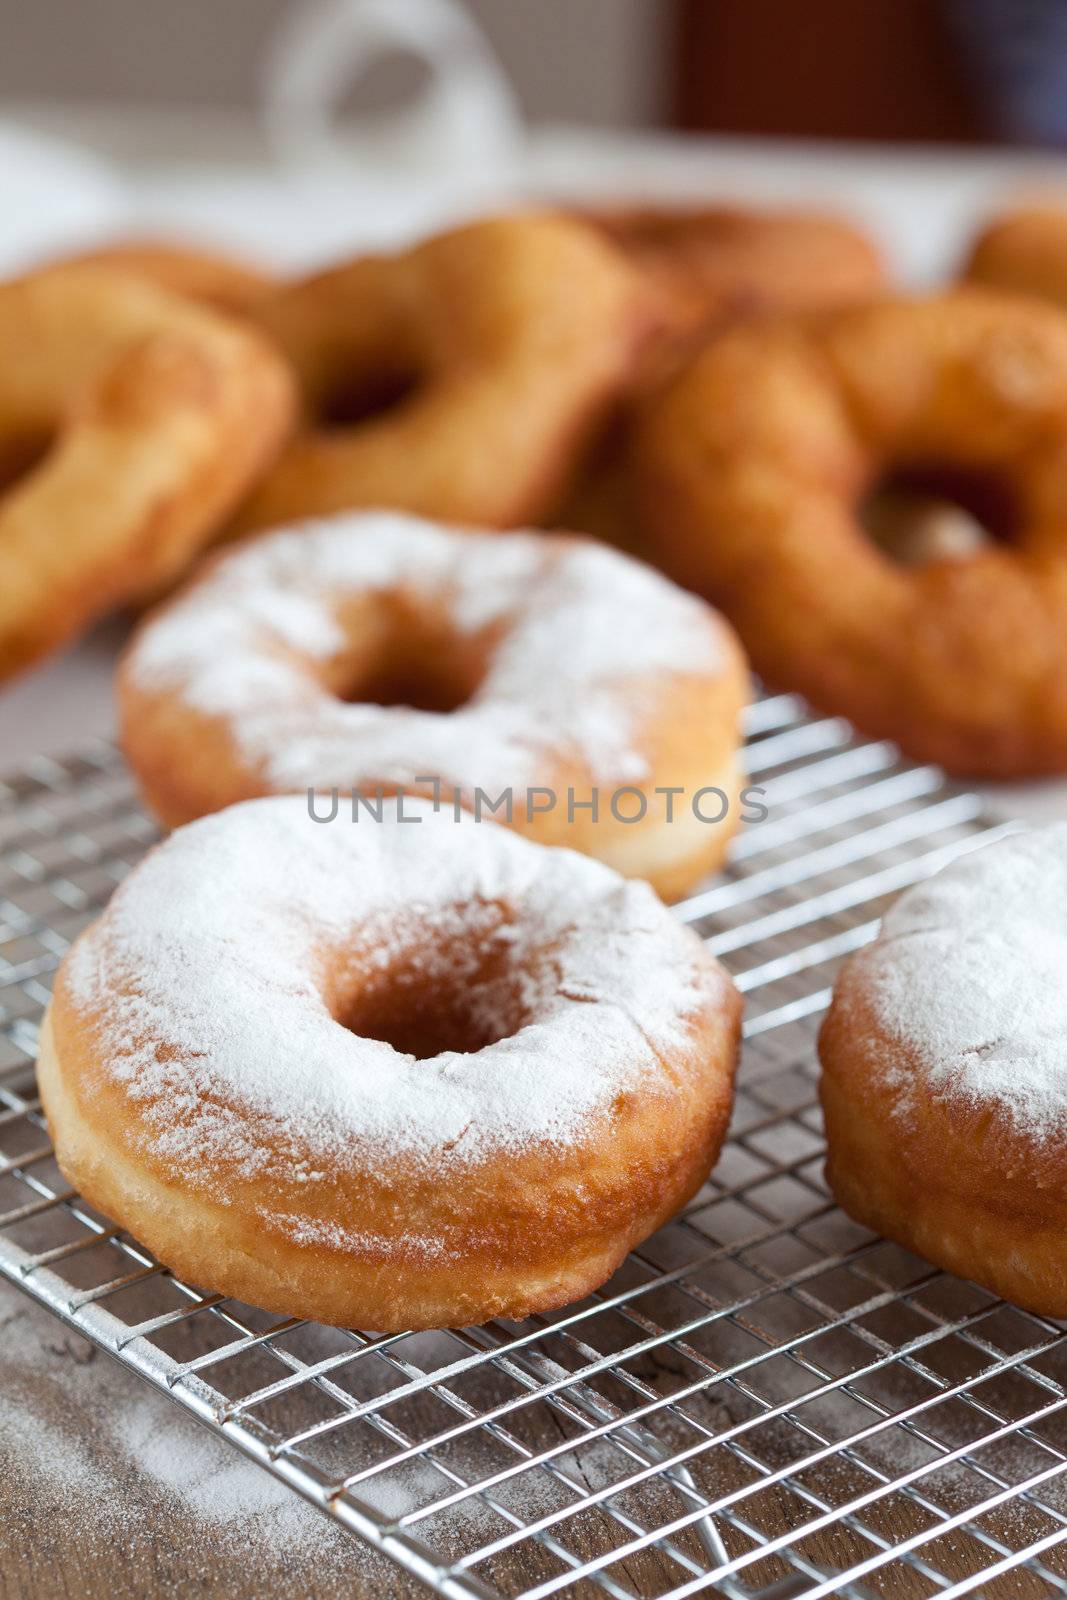 Doughnut with icing sugar by Fotosmurf